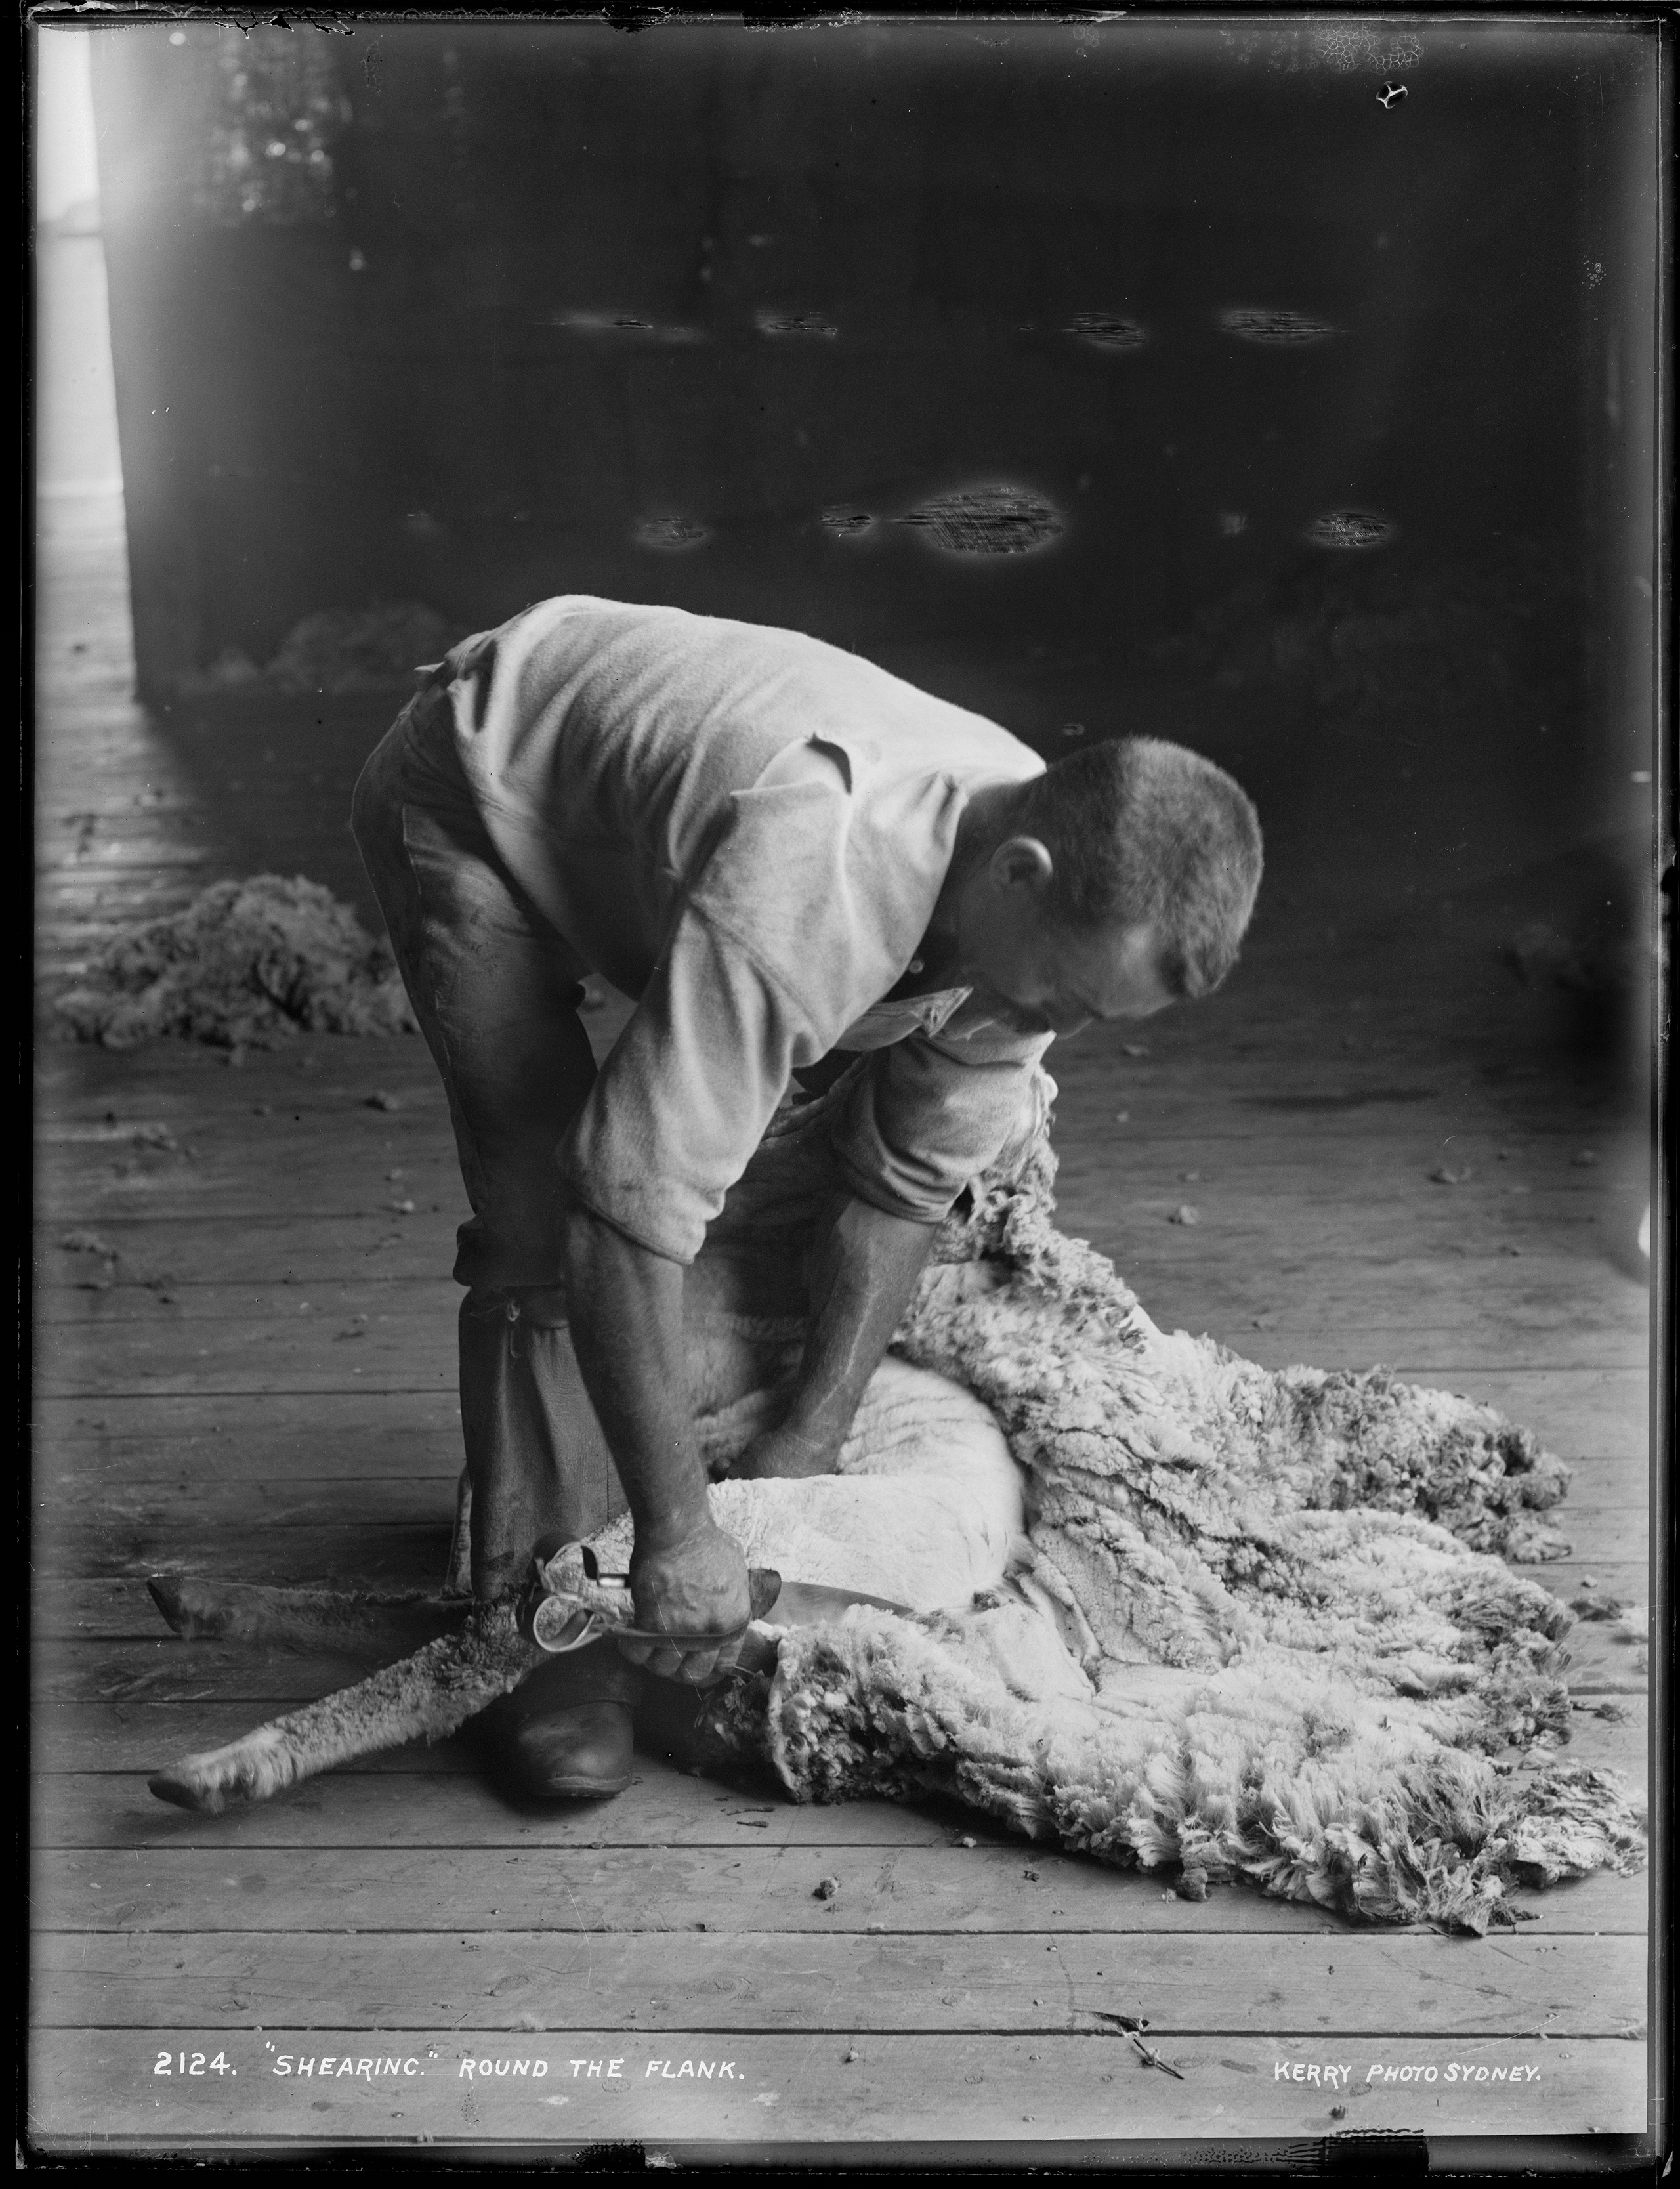 Glass plate negative of an Australian shearer using hand shears to shear a sheep, 1890-1900